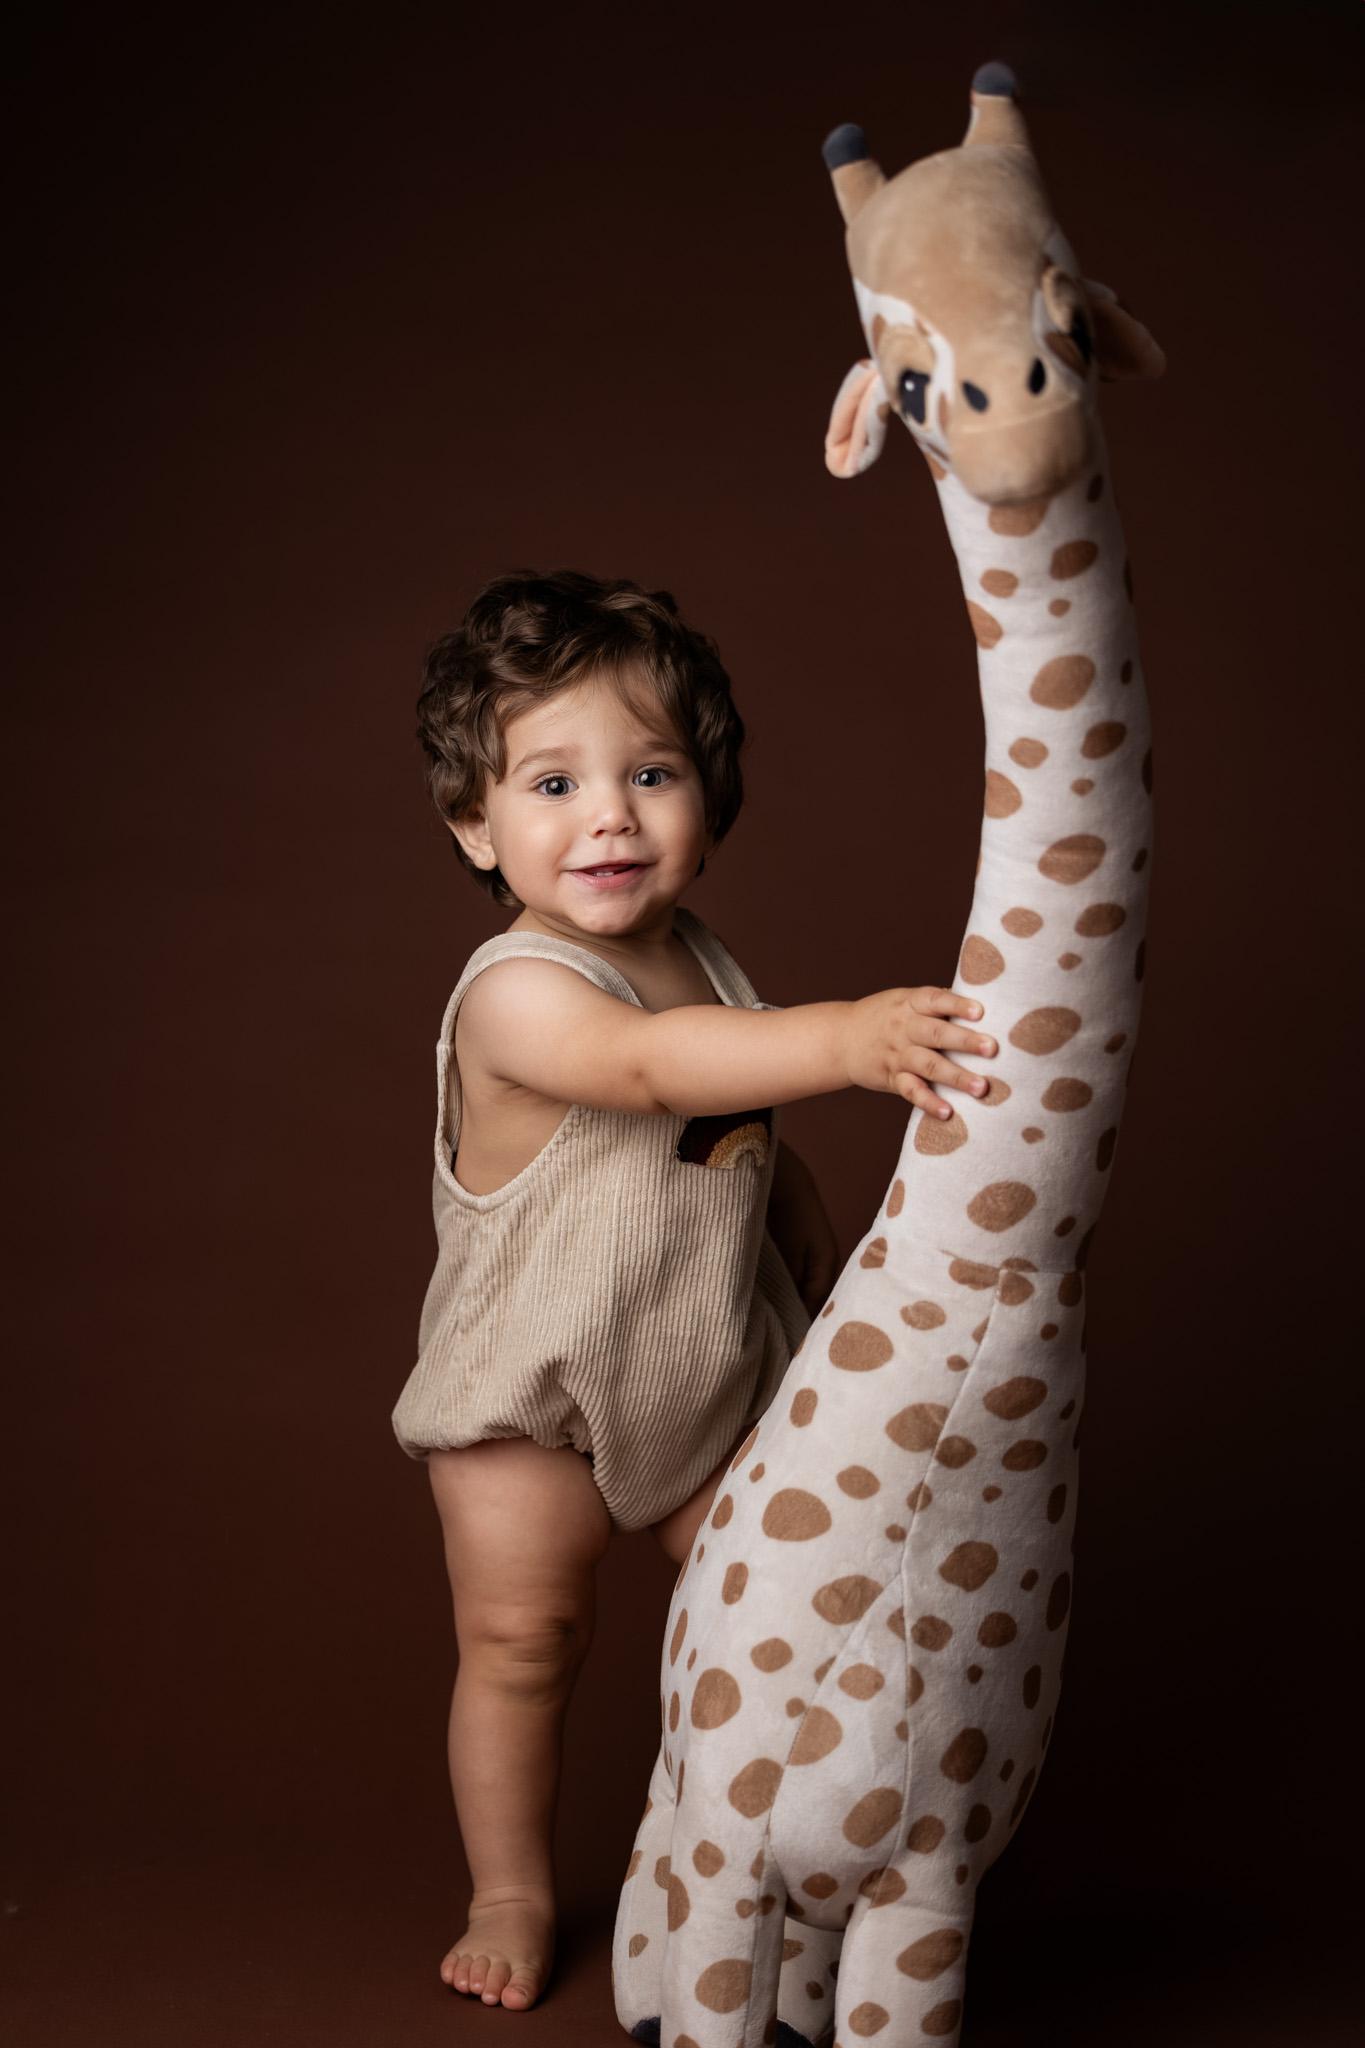 bébé 1 an avec sa peluche girafe se tient debout